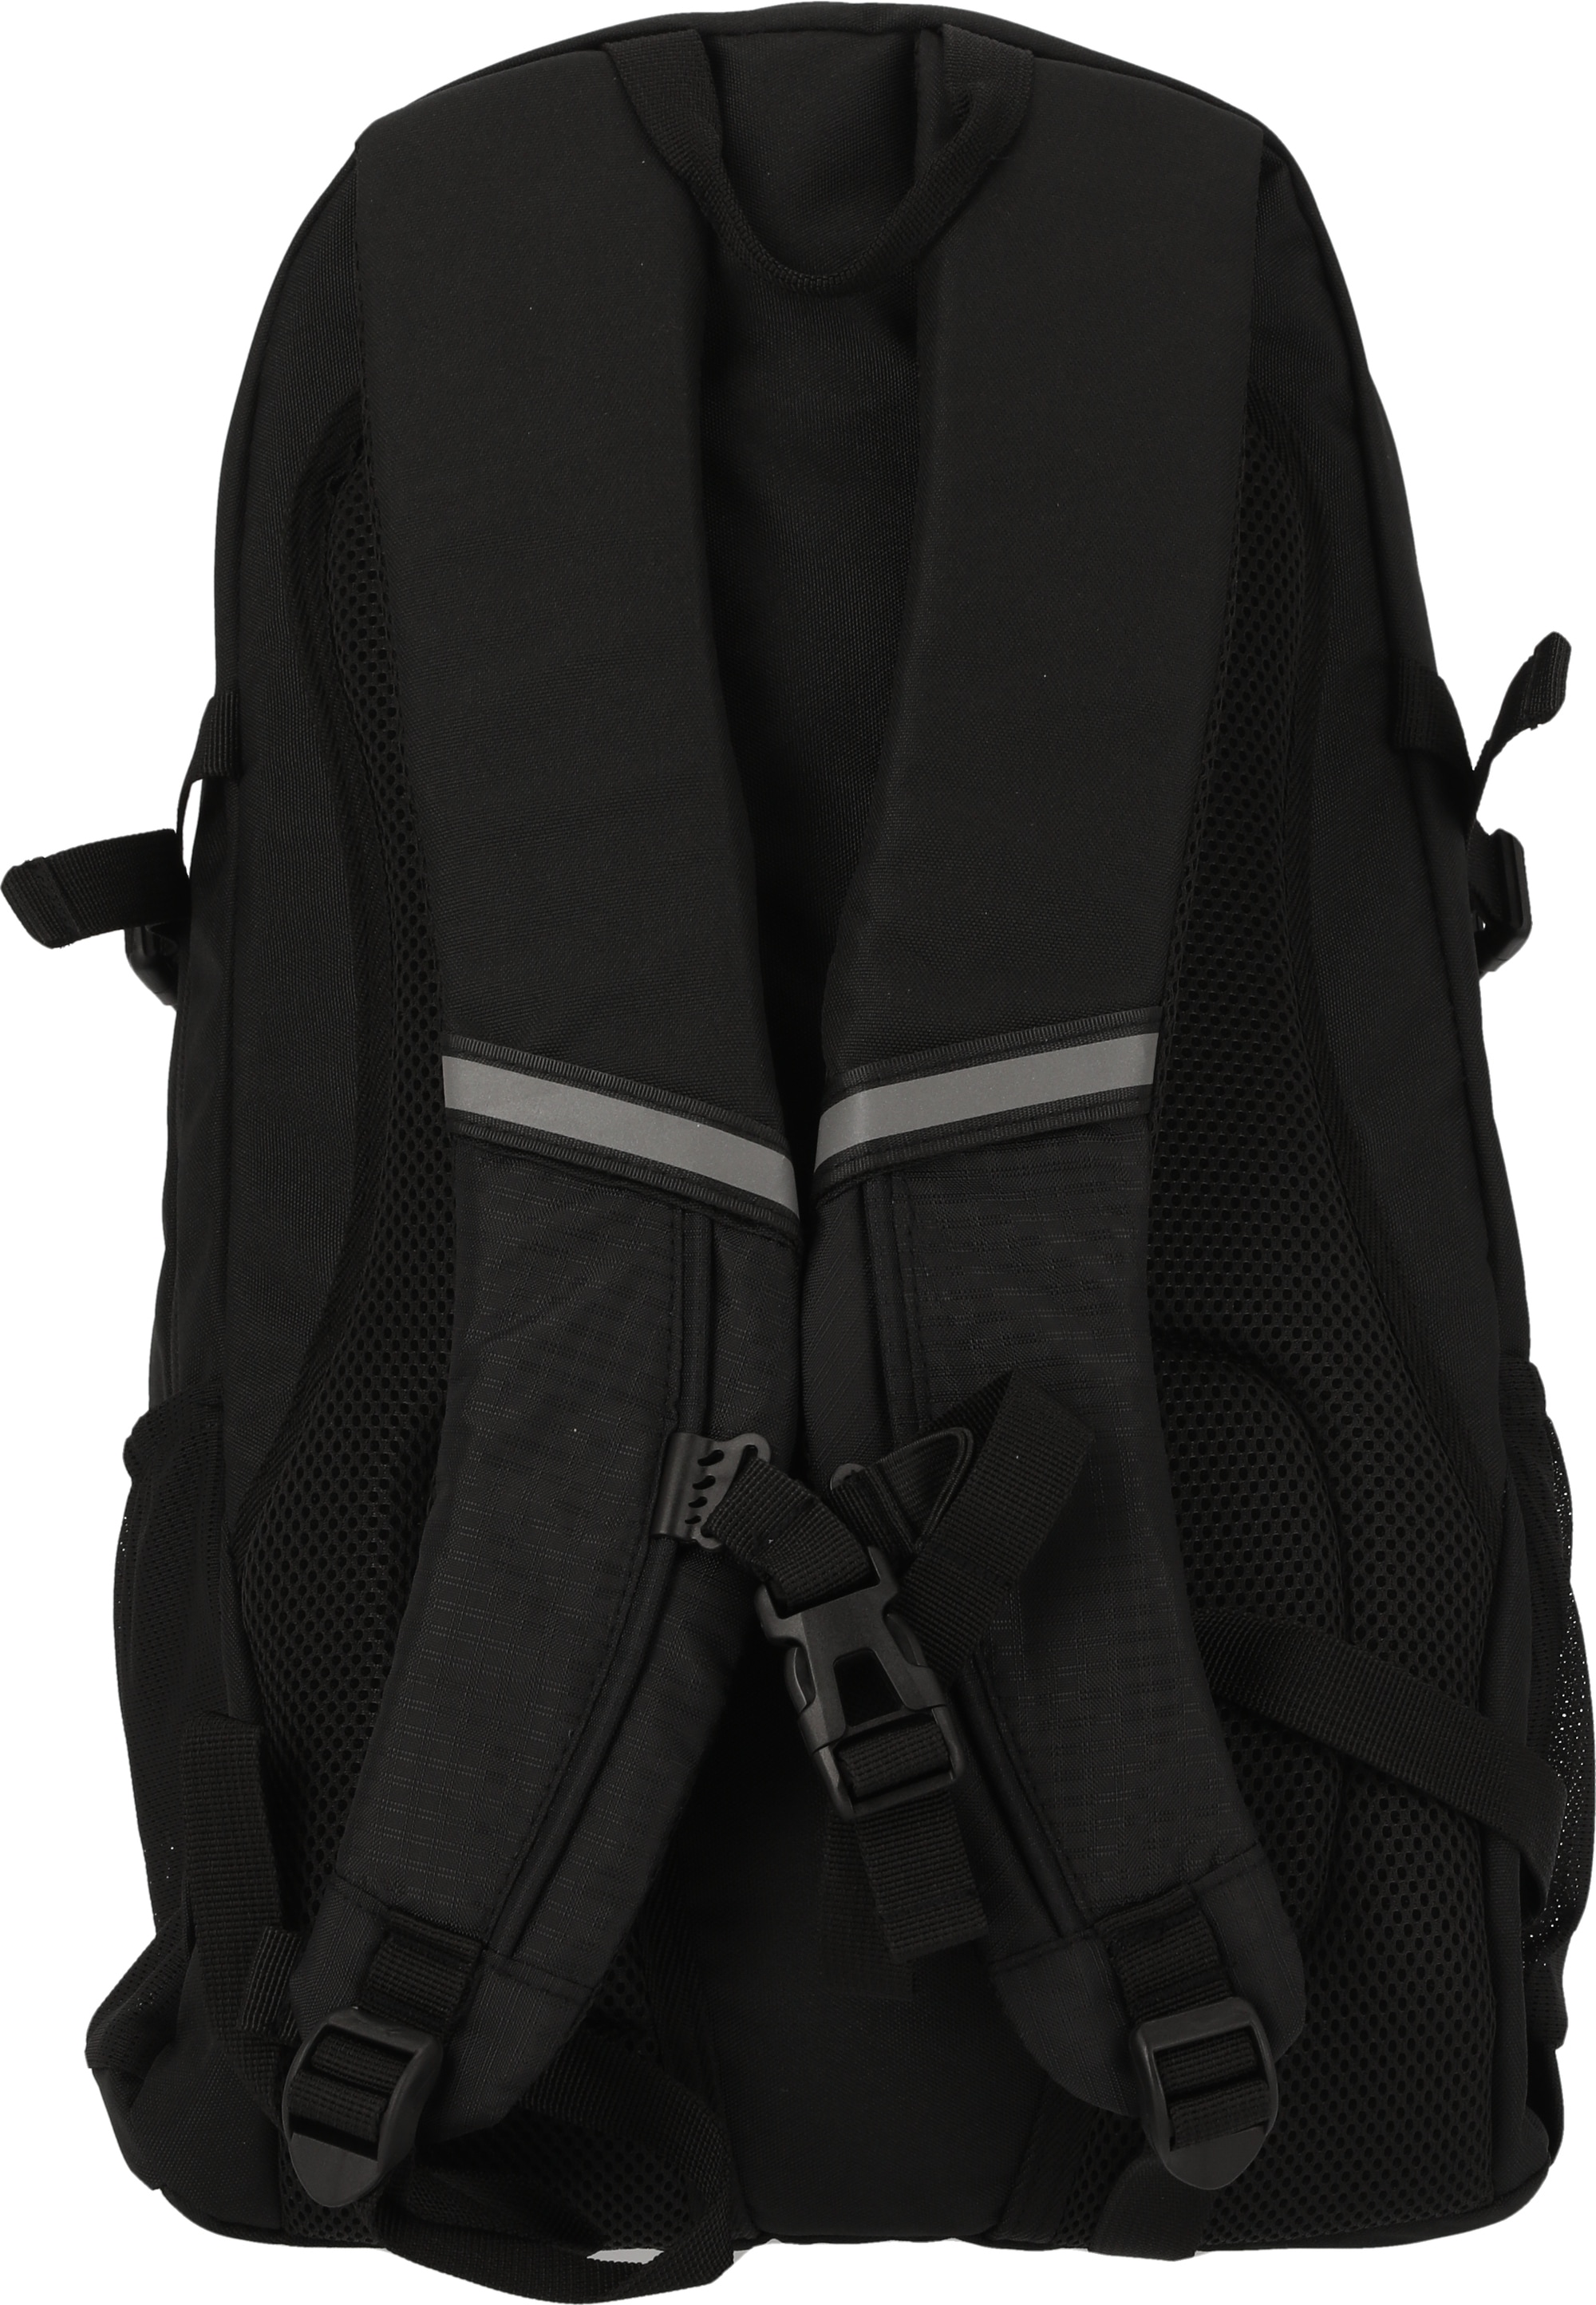 WHISTLER Sportrucksack »Alpinak«, mit vielseitigen Taschen